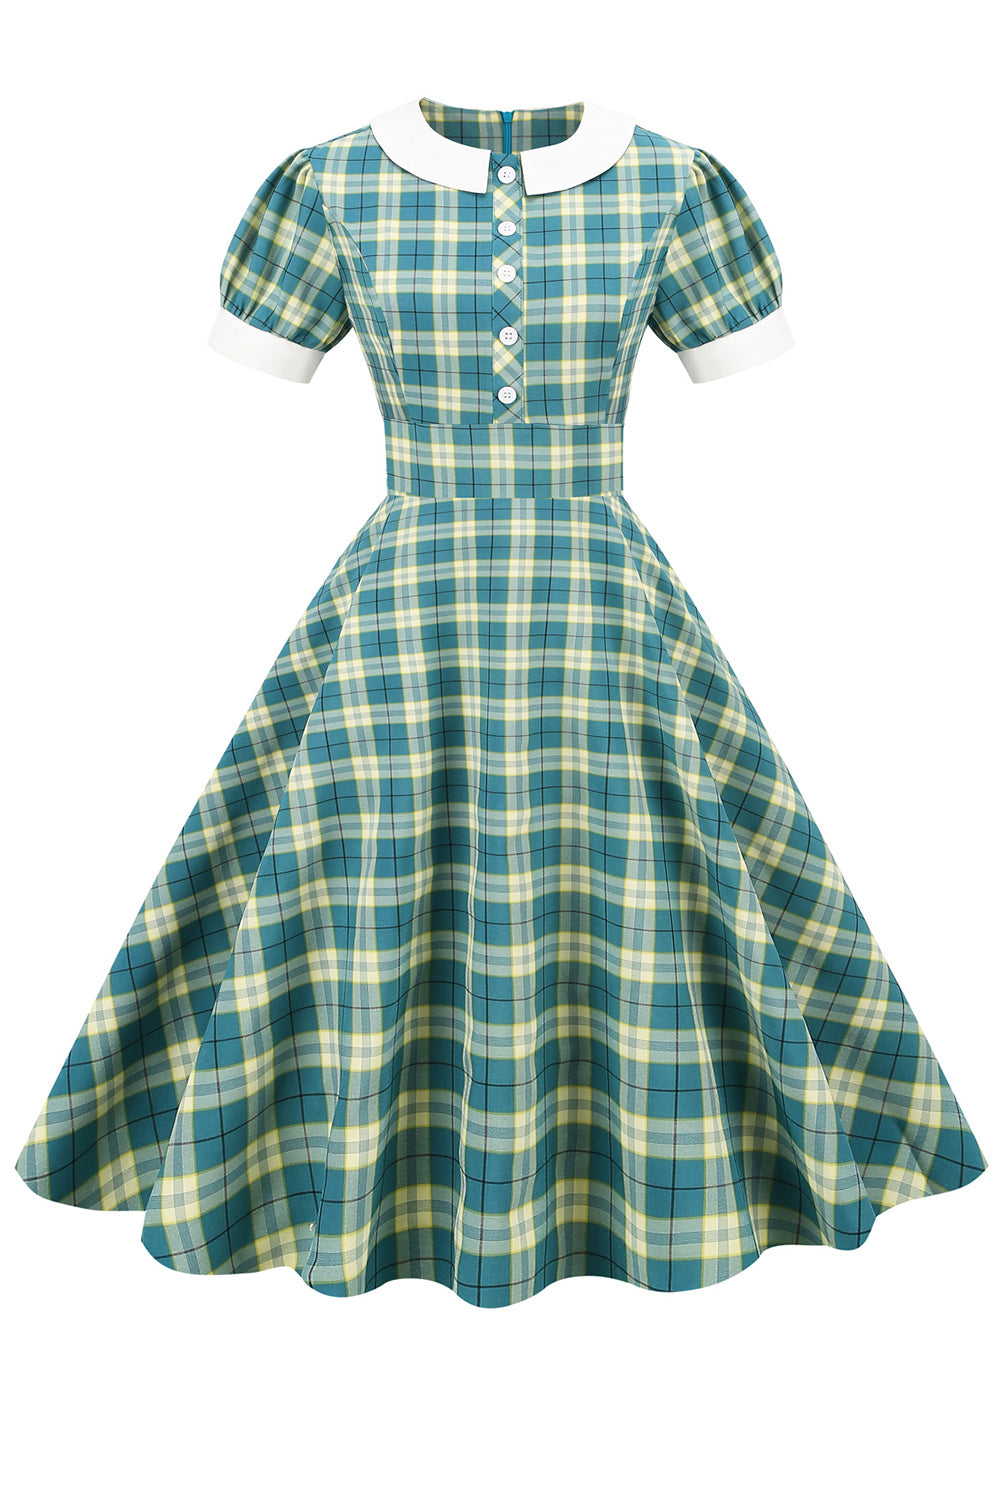 Juwelenausschnitt Green Grid Kleid aus den 1950er Jahren mit kurzen Ärmeln